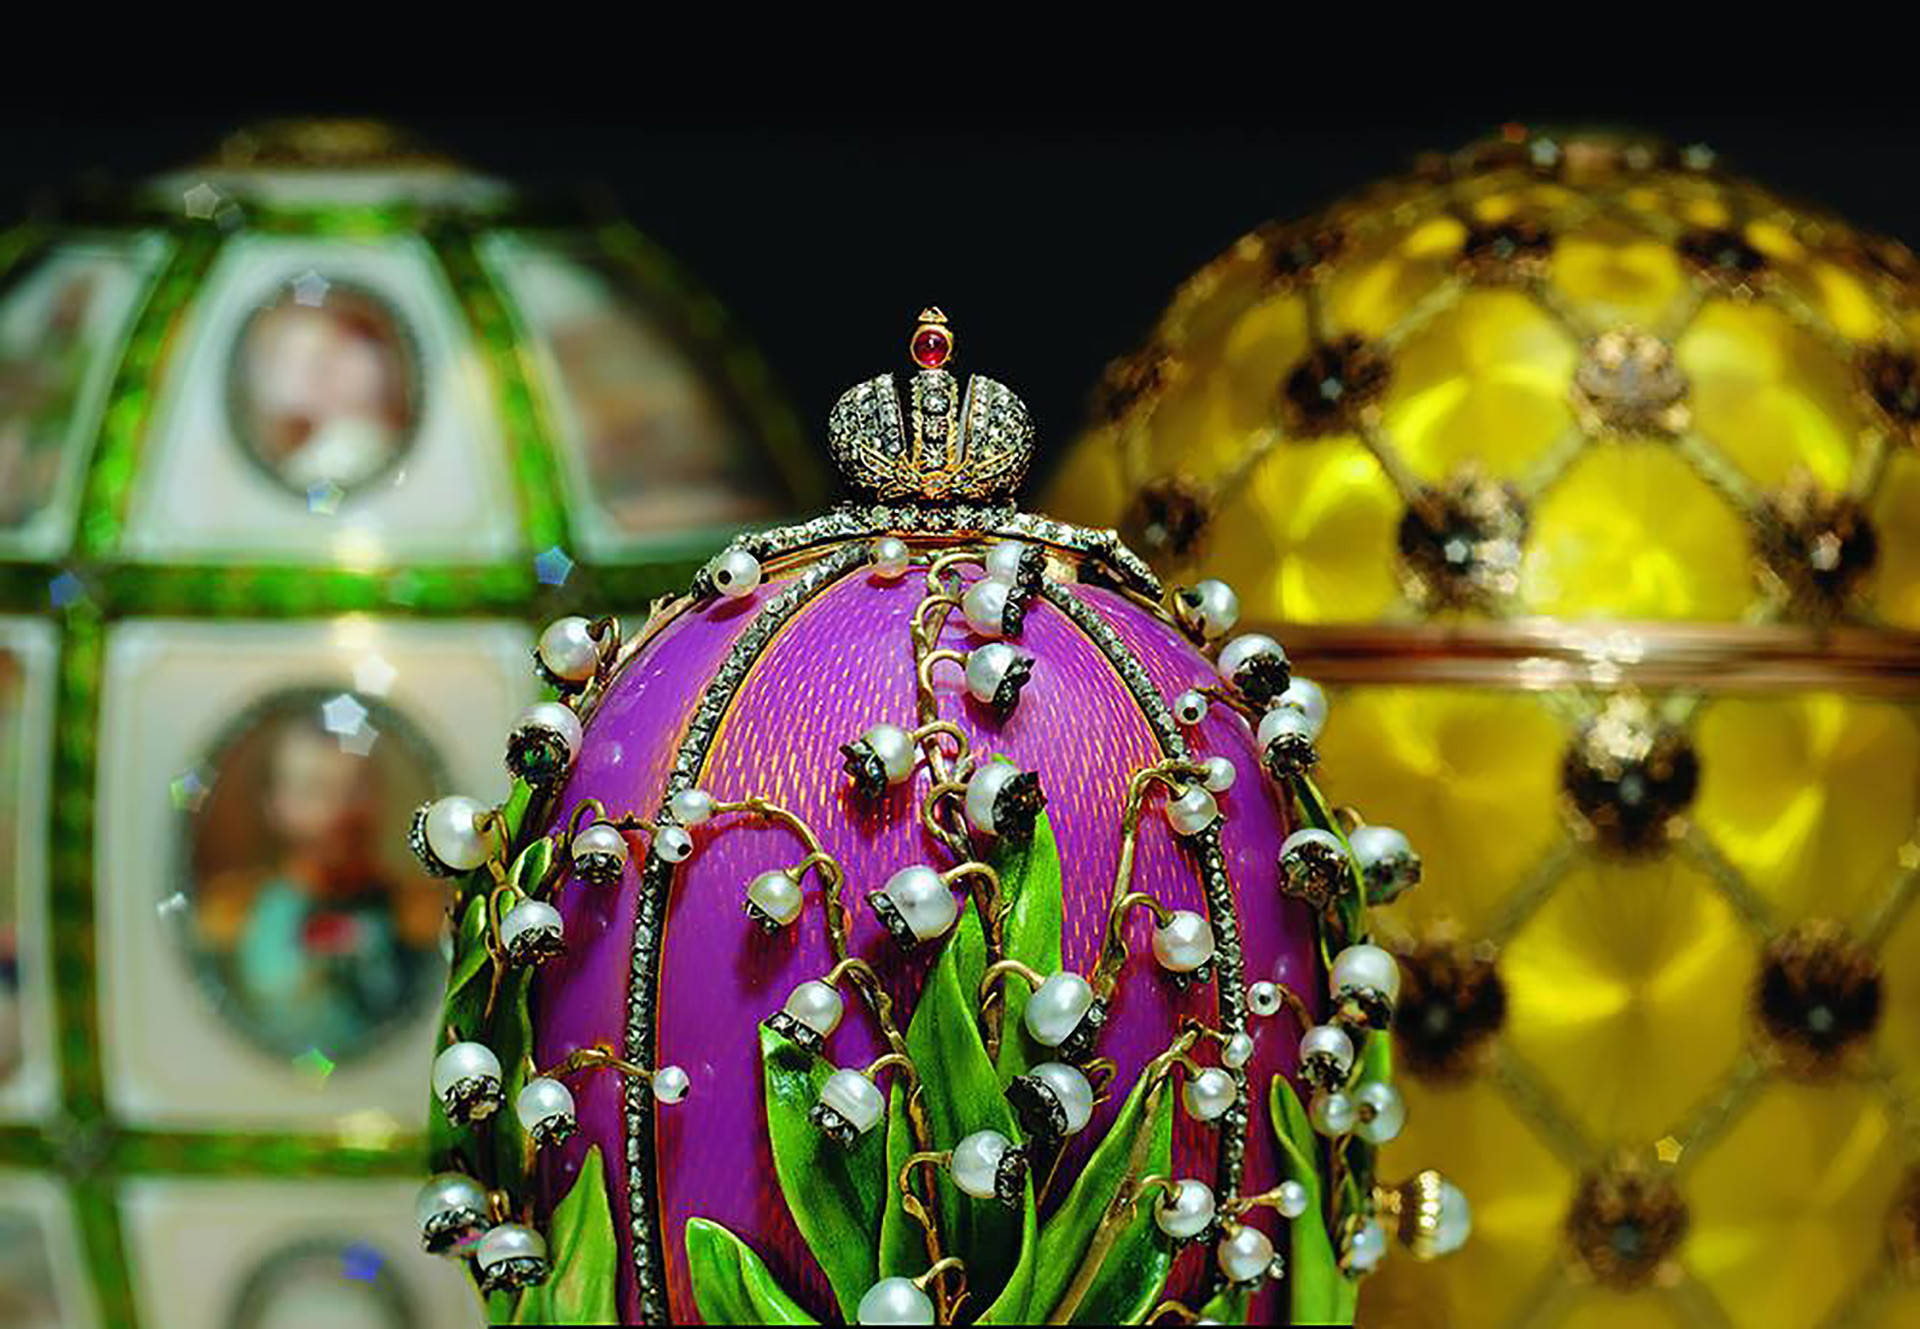 Nem só de ovos Fabergé vive o museu, que já recebeu exposições de Frida Kahlo e Dalí. 